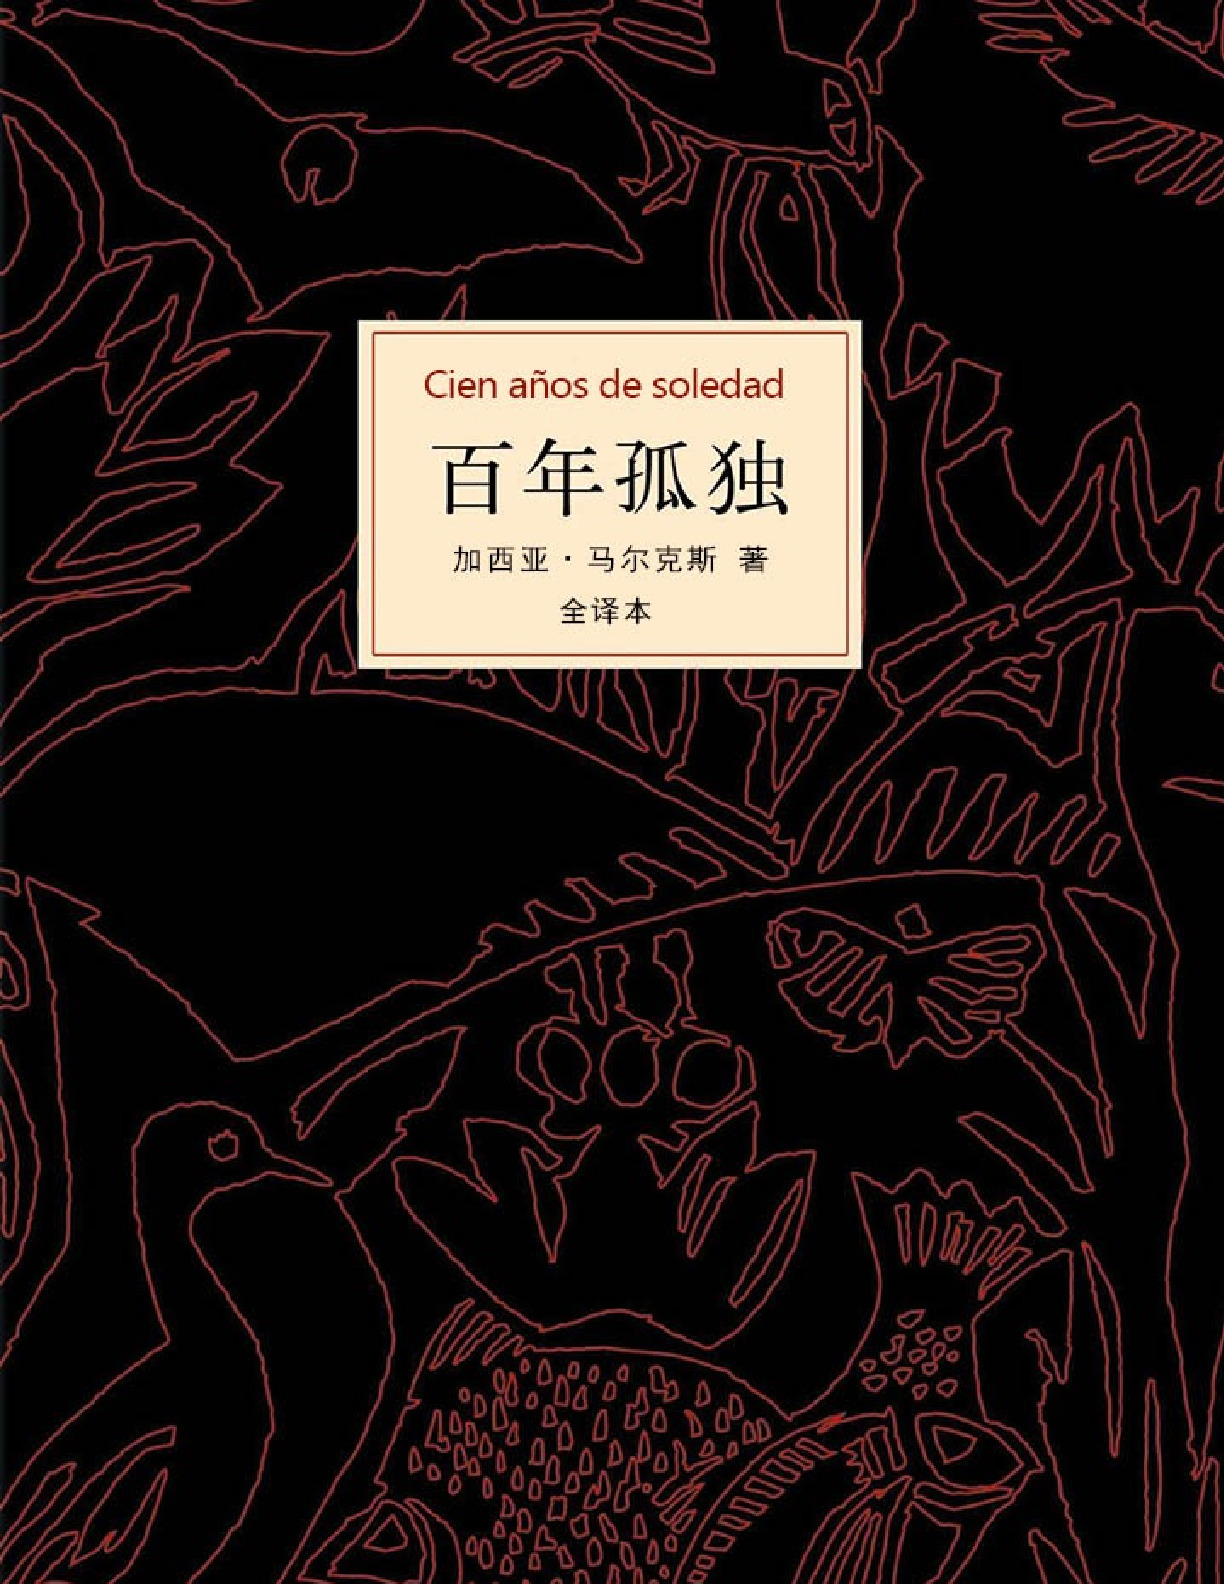 百年孤独 – 4版中文-1版英文1版西班牙文